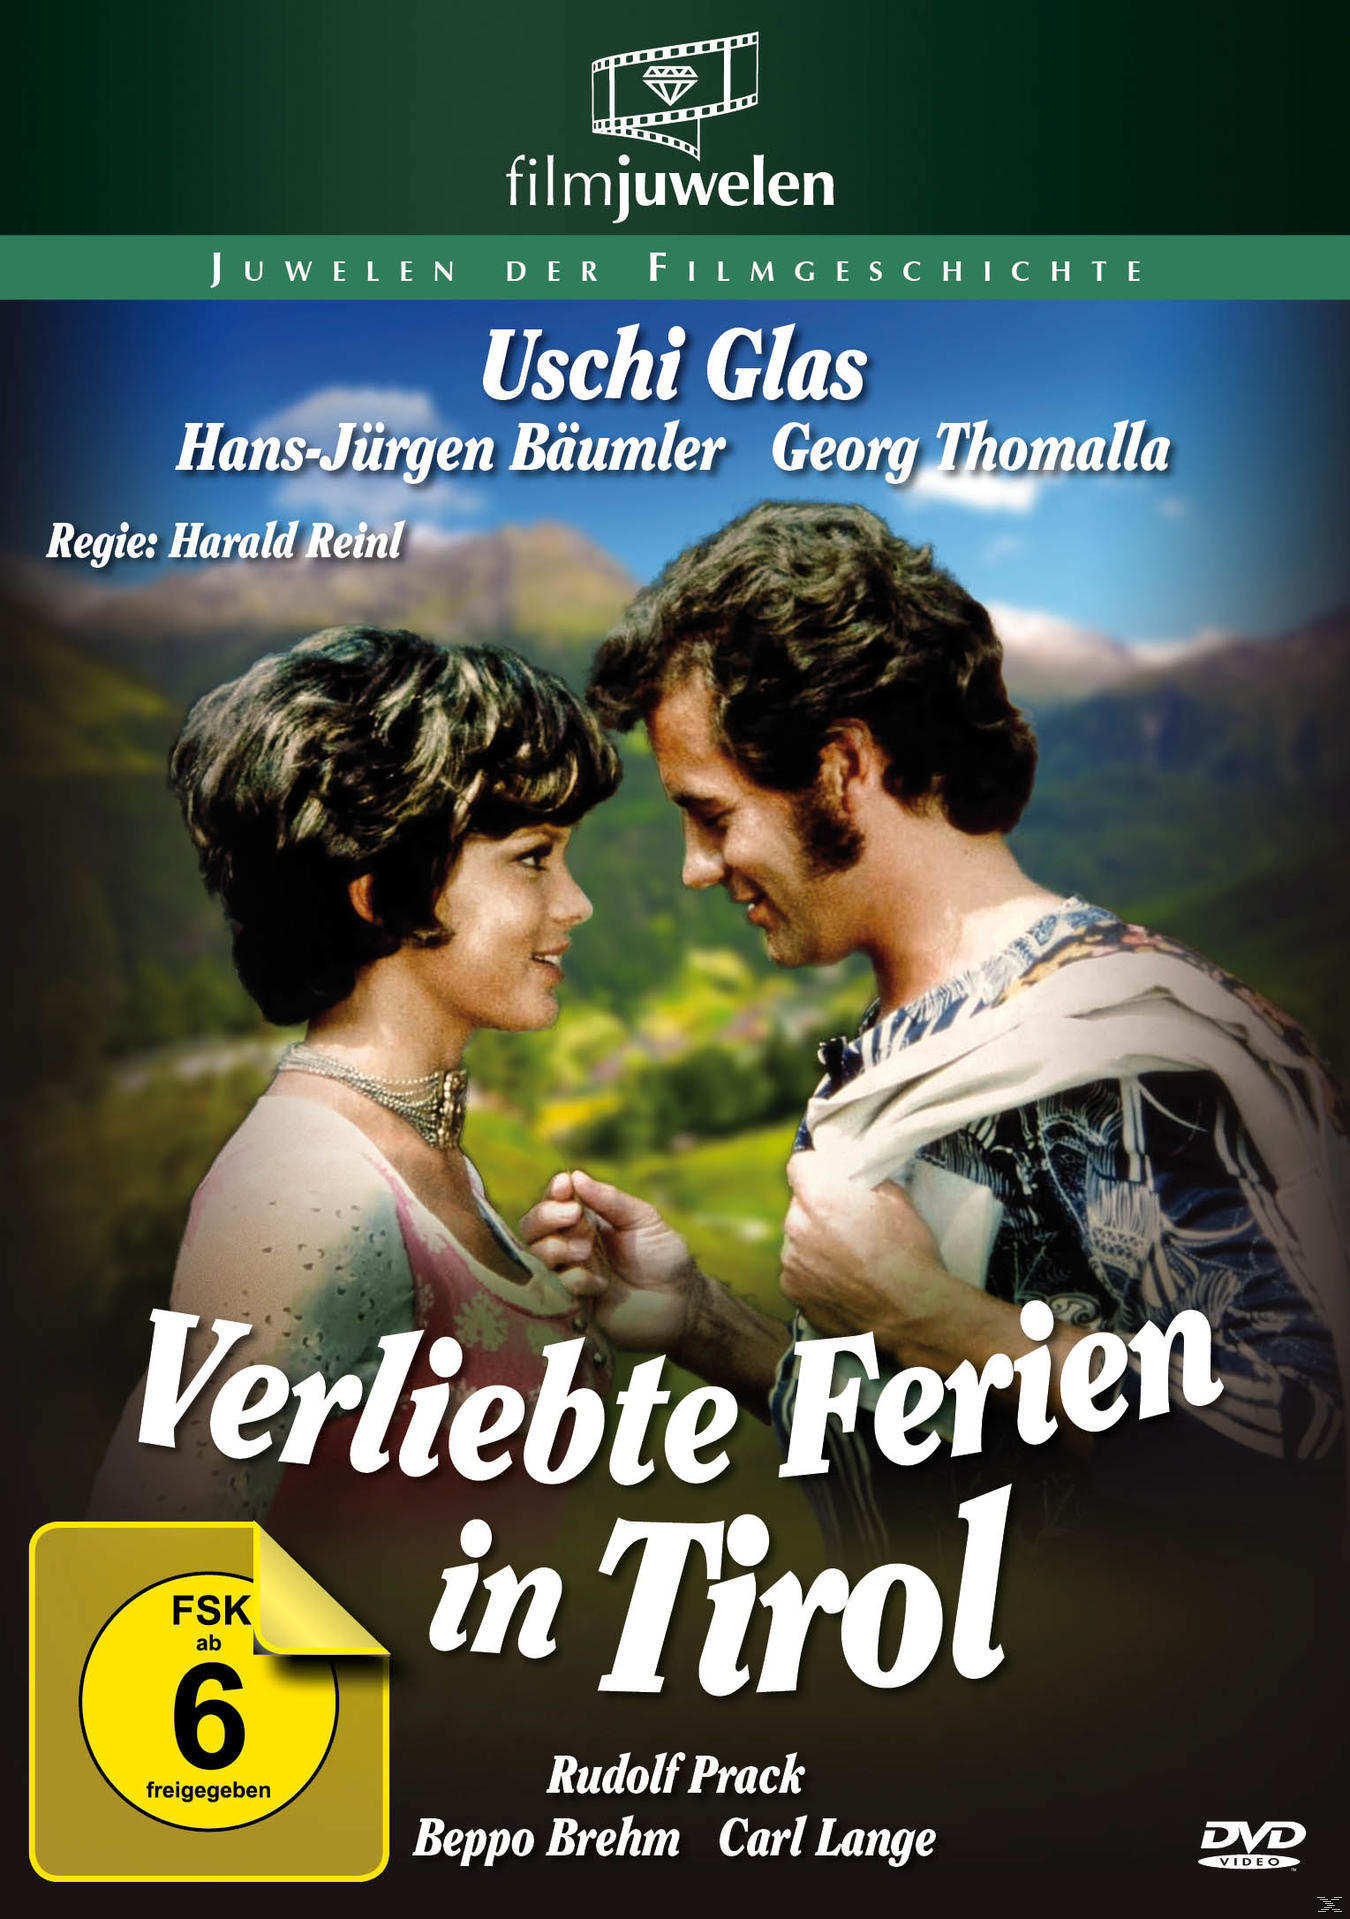 Tirol Verliebte in DVD Ferien